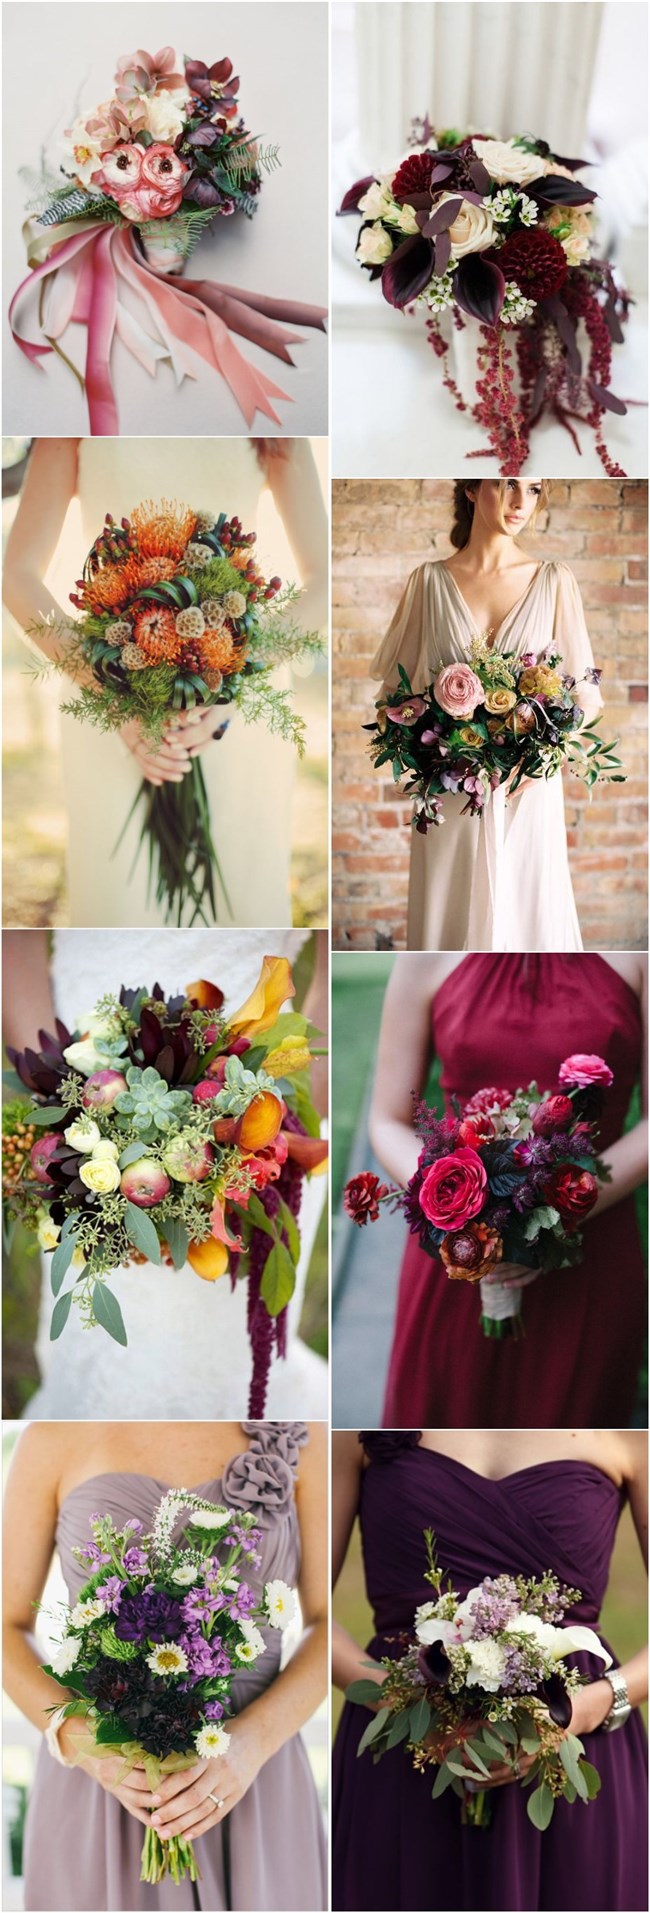 fall wedding flower ideas-fall wedding bouquets